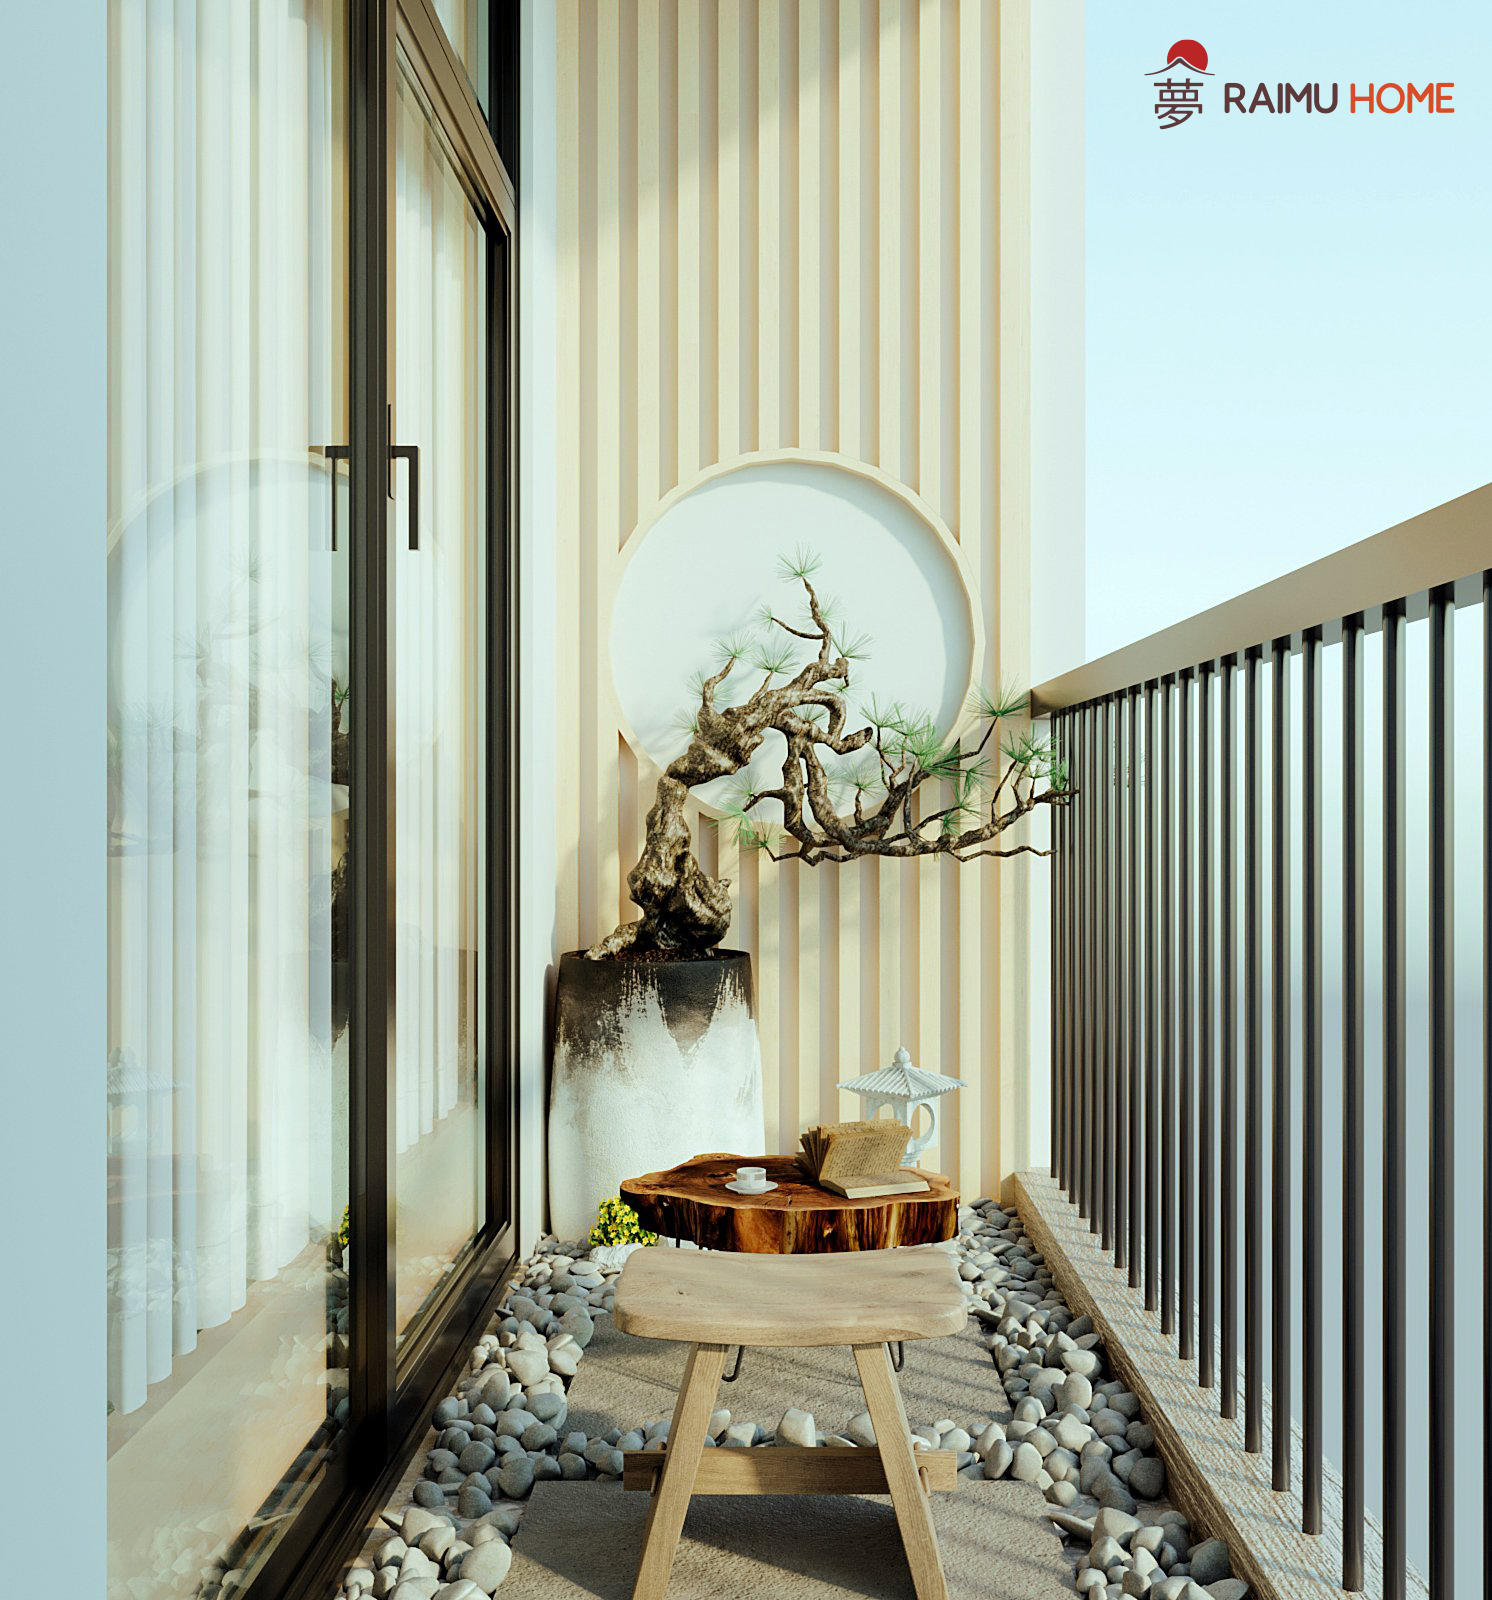 Xu hướng thiết kế chung cư phong cách Nhật Bản đang nổi lên tại Việt Nam, những ngôi nhà tối giản, đơn giản, nội thất sang trọng với các tone màu trầm, tạo nên không gian tĩnh lặng cho người sống. Không chỉ là sự đơn giản mà còn là sự tiện nghi, hãy để chúng tôi giúp bạn thiết kế một không gian sống phong cách Nhật Bản độc đáo cho bạn và gia đình.